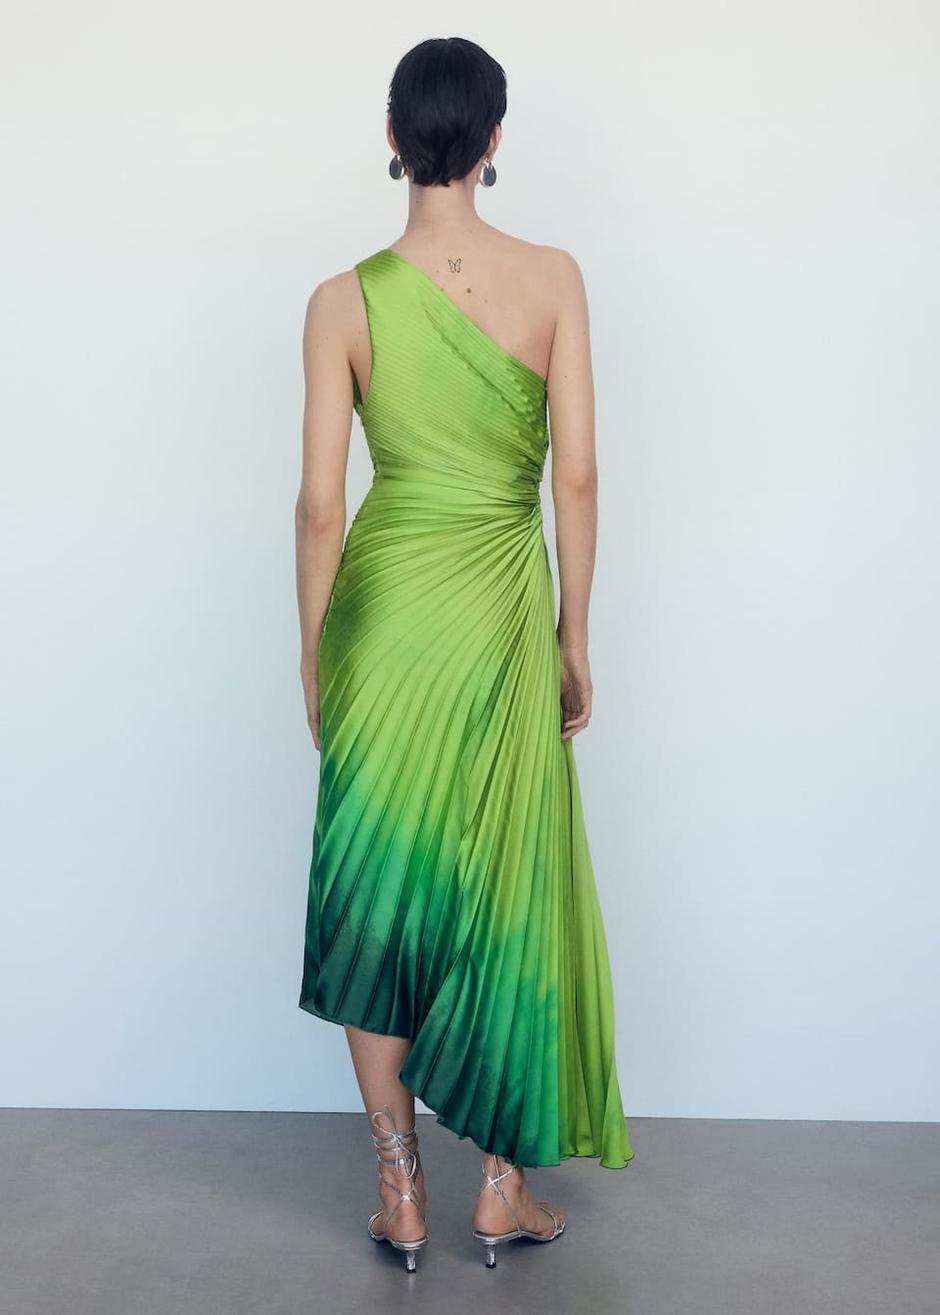 Foto: Mango, viralna asimetrična haljina u zelenoj boji | Autor: Mango